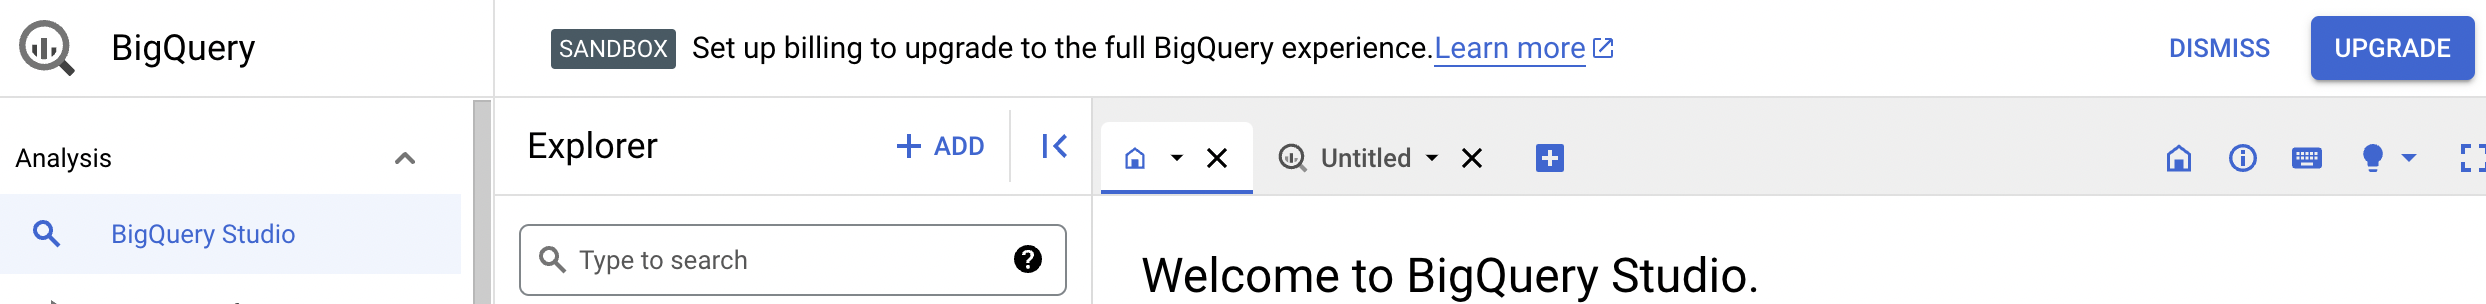 Pemberitahuan konfirmasi memberikan opsi untuk mengupgrade ke BigQuery versi lengkap.